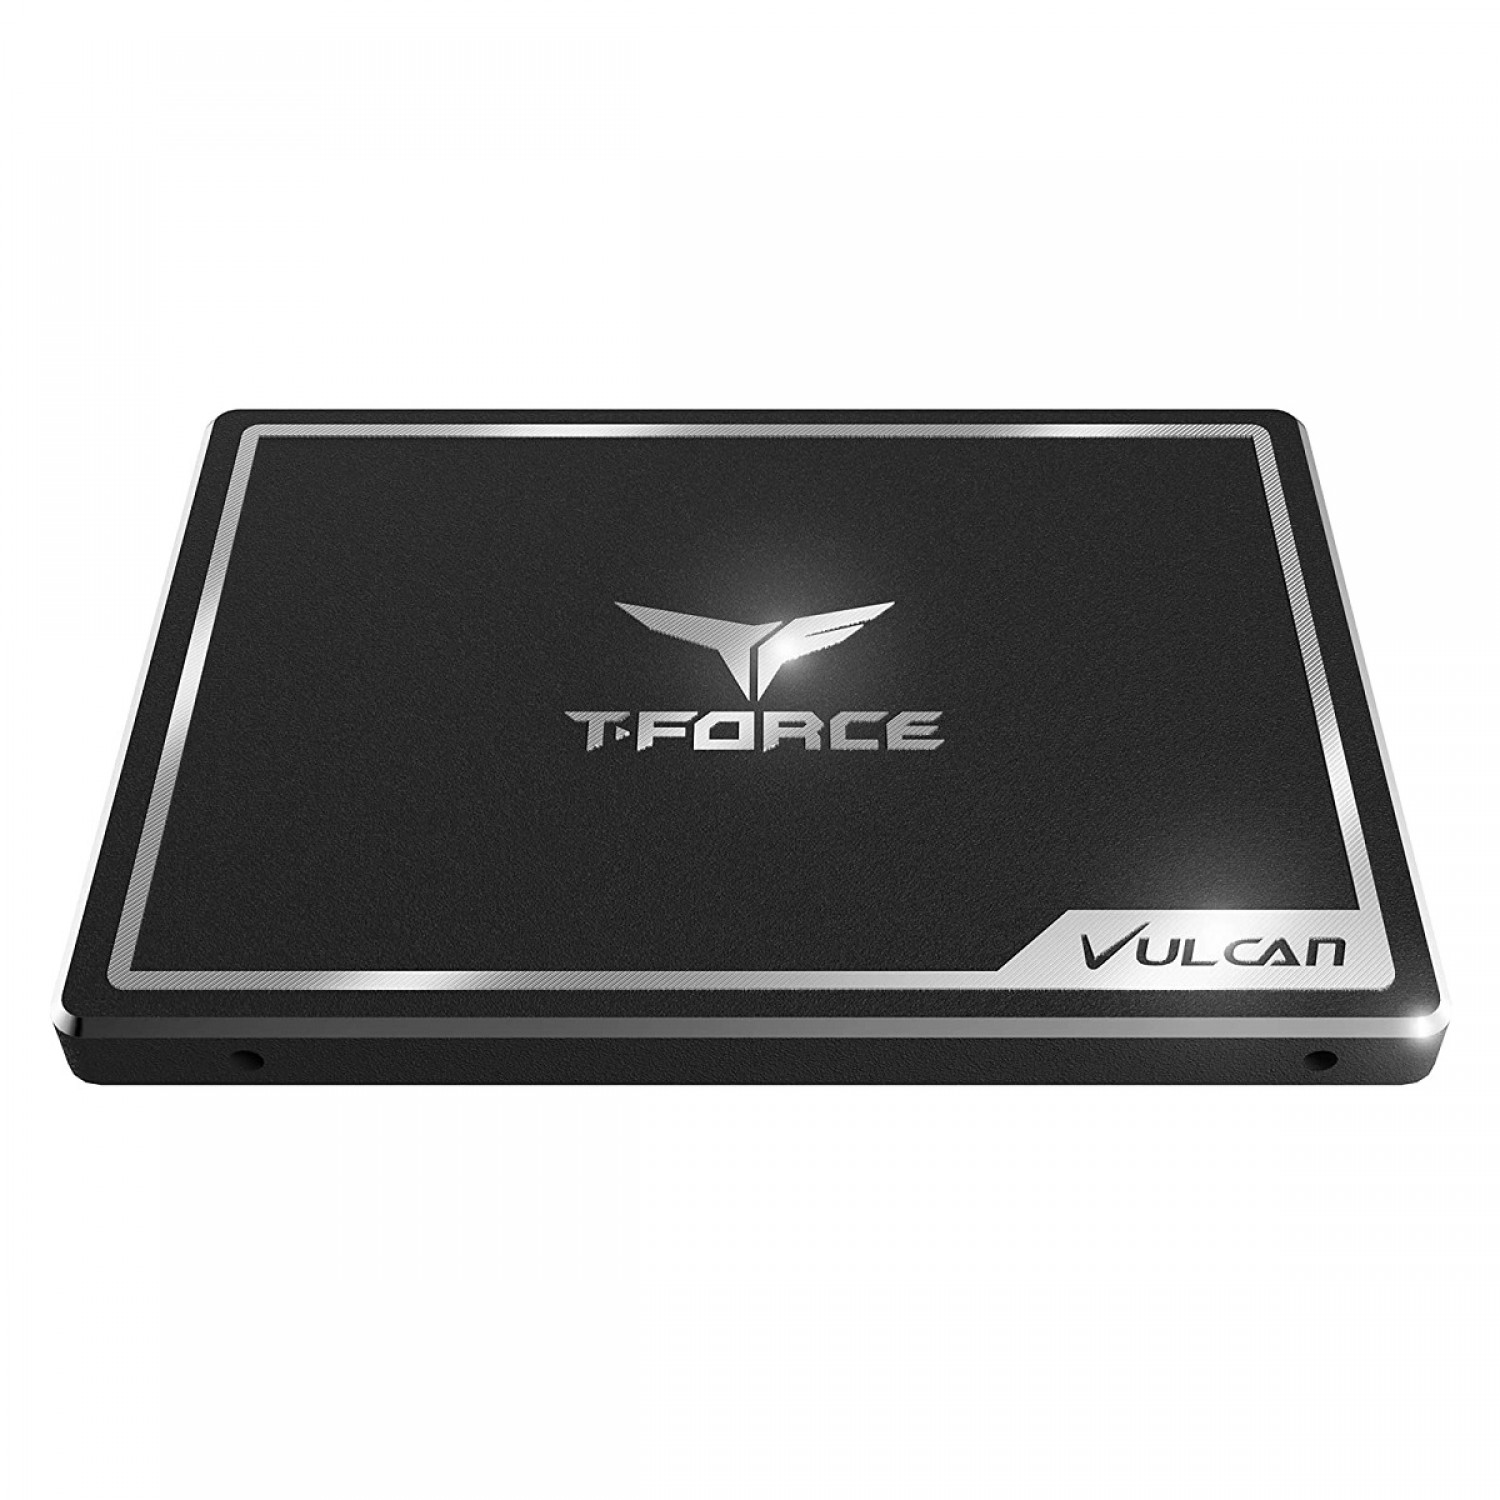 حافظه اس اس دی TeamGroup T-Force Vulcan 250GB-3